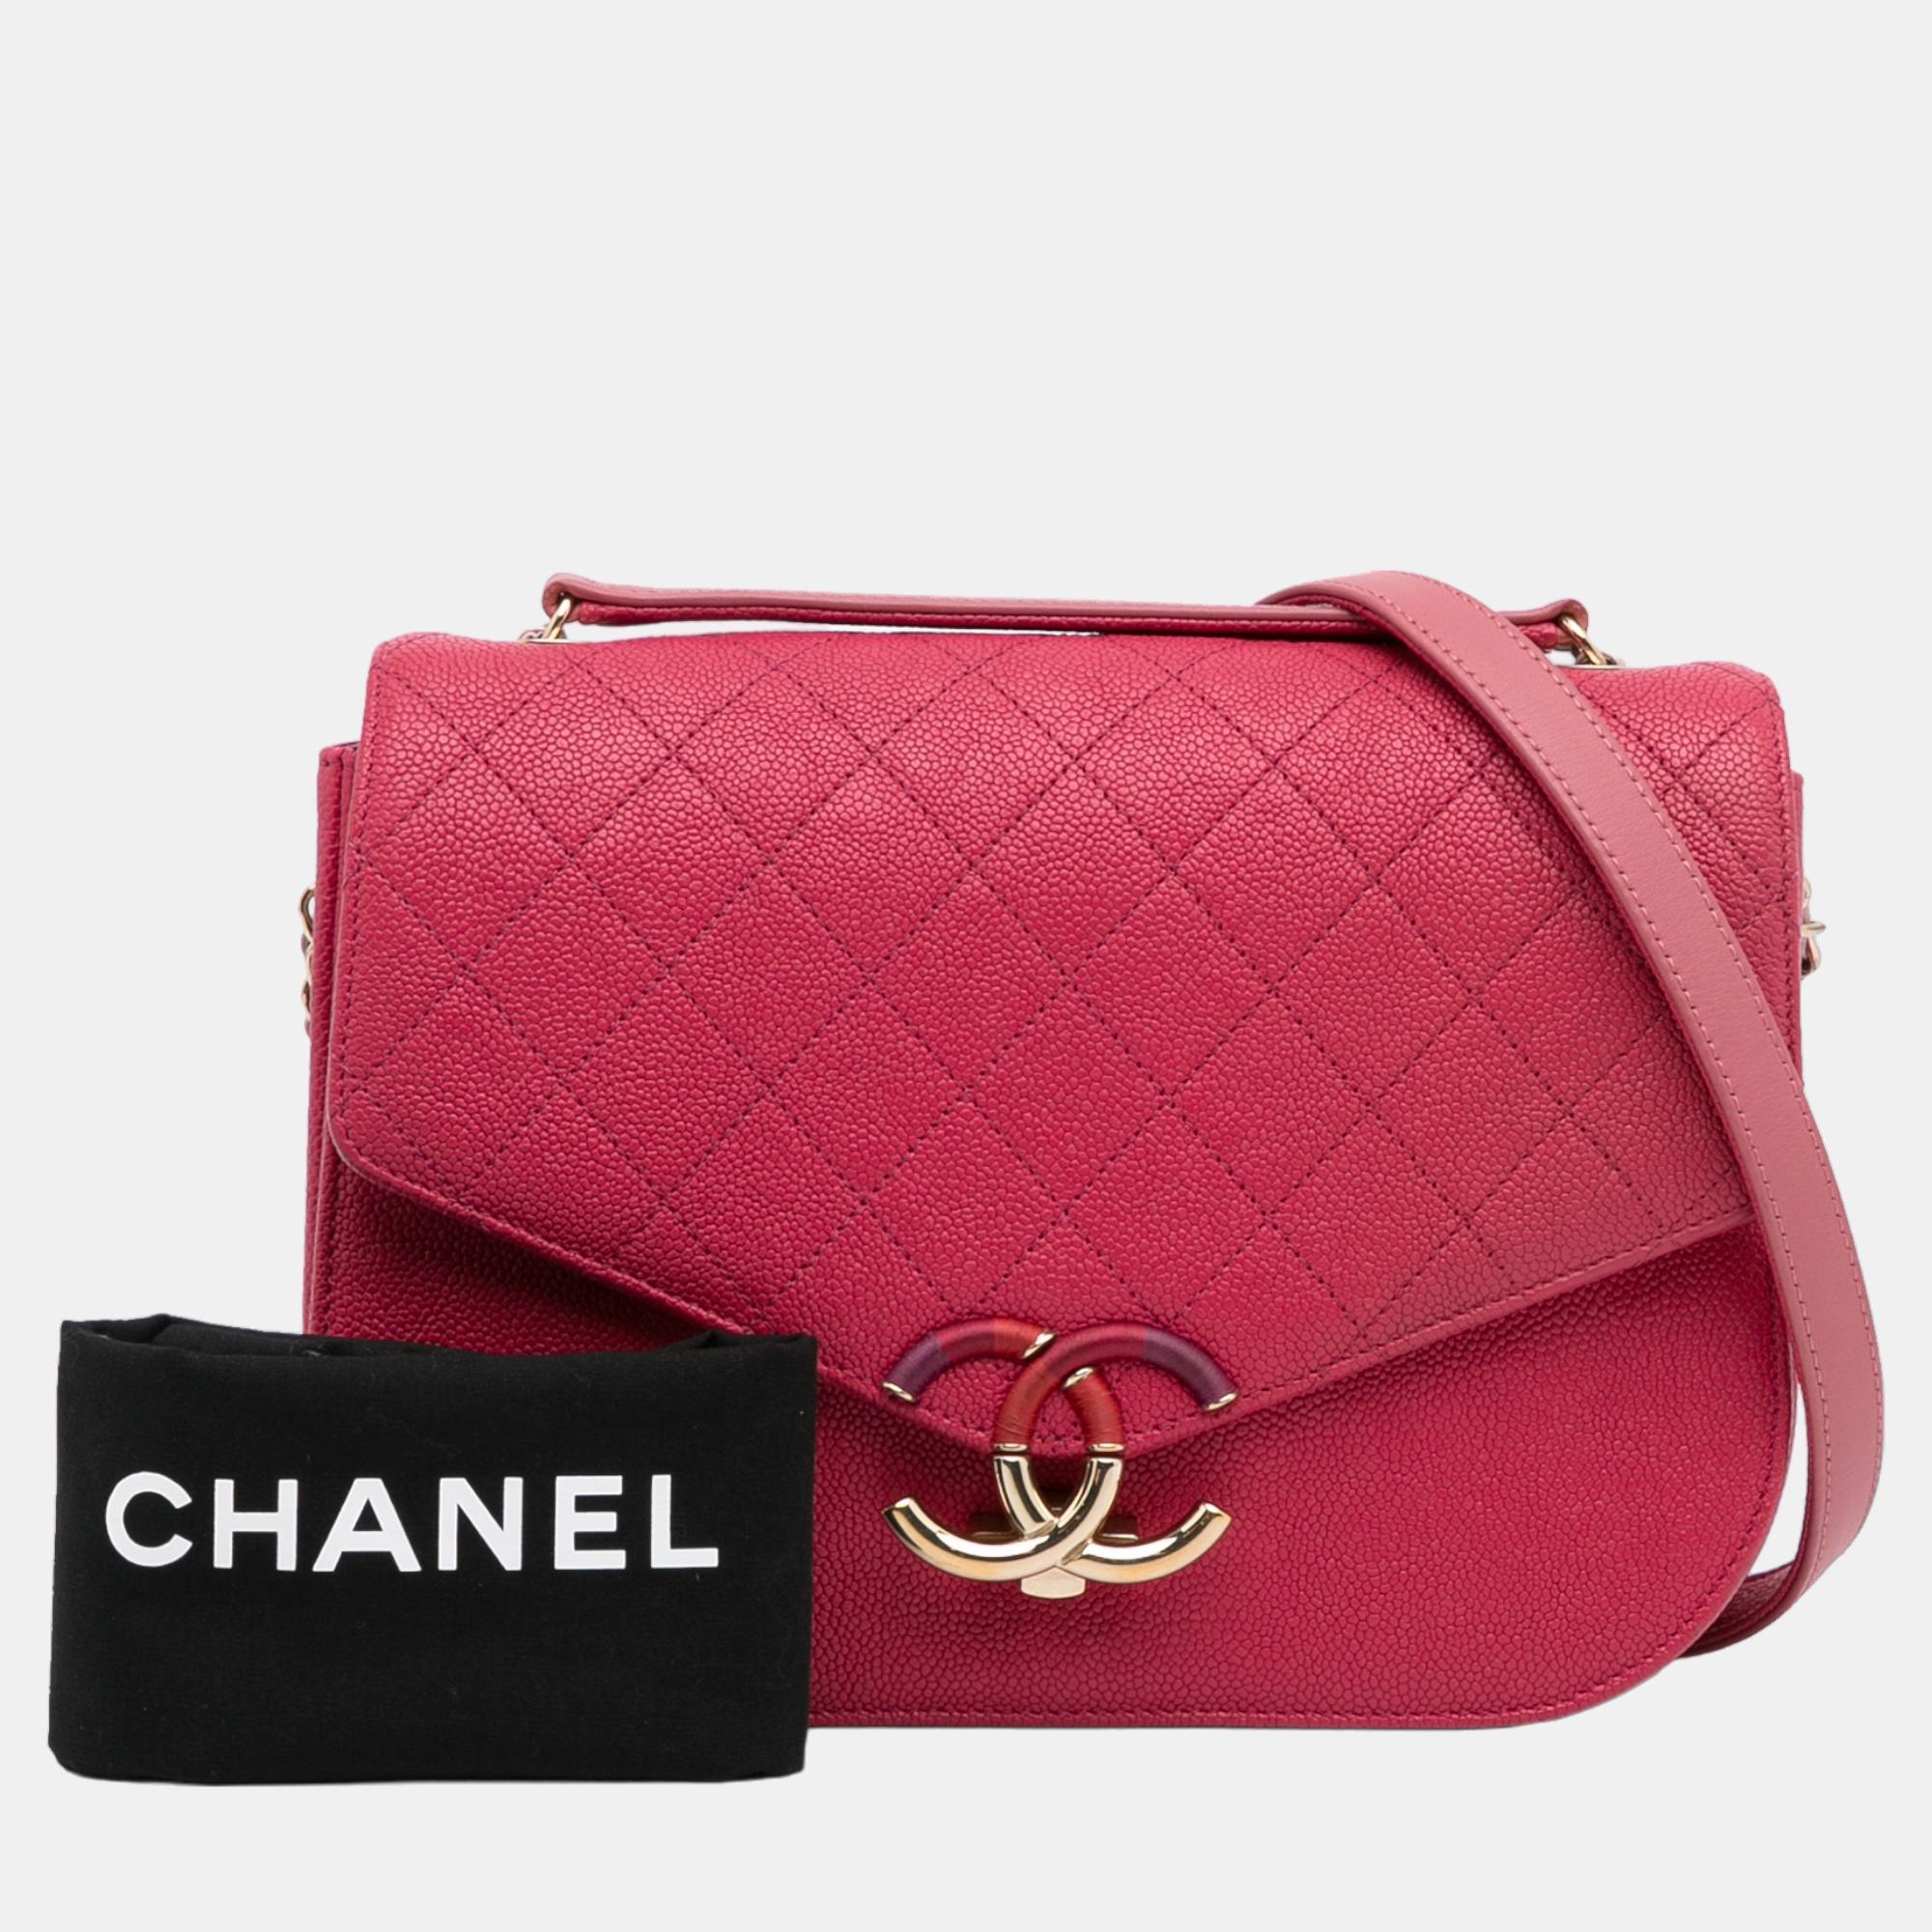 Chanel Pink Medium Calfskin Cuba Flap